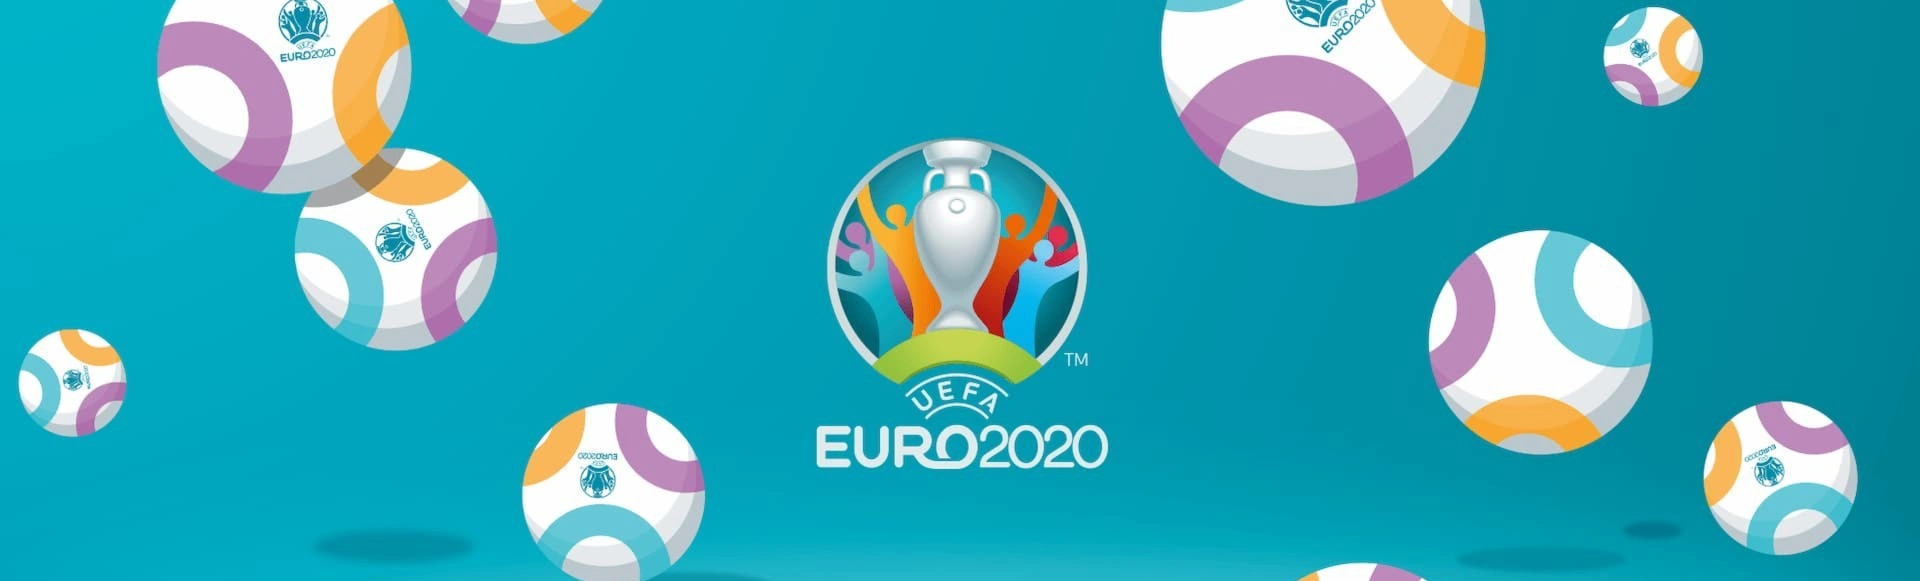 Изменения в правилах матчей Евро-2020
